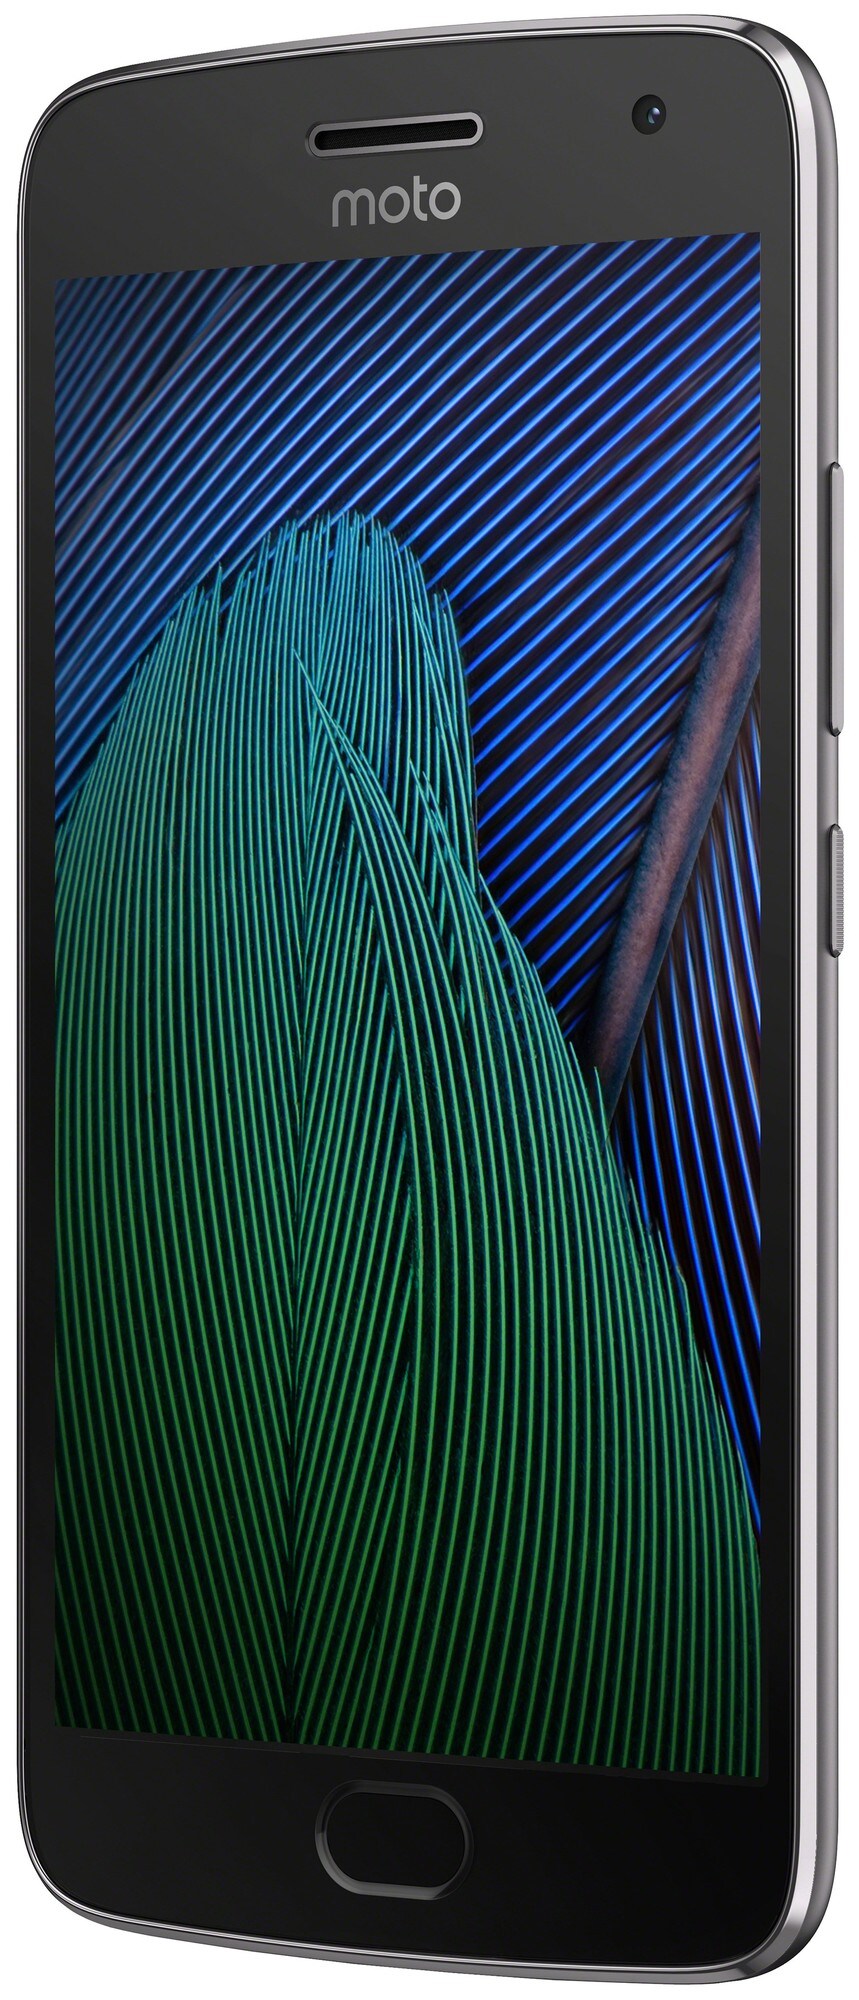 Motorola Moto G5 Plus smarttelefon (grå) - Mobiltelefon - Elkjøp